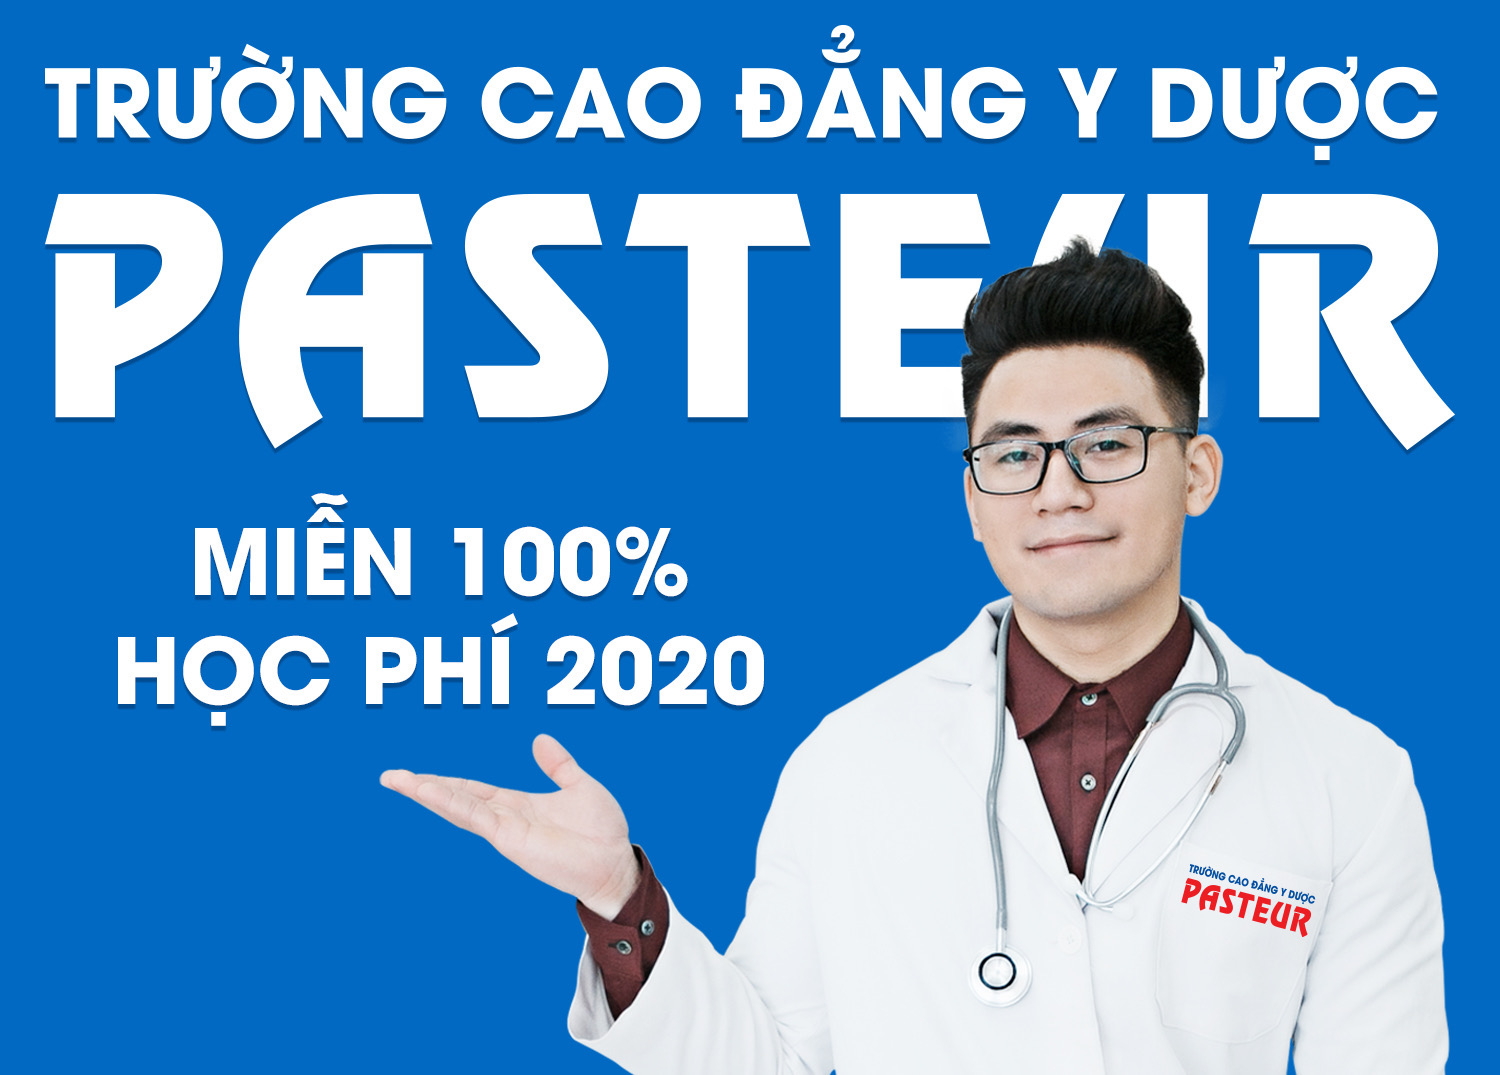 Trường Cao đẳng Y Dược Pasteur miễn 100% học phí 2020